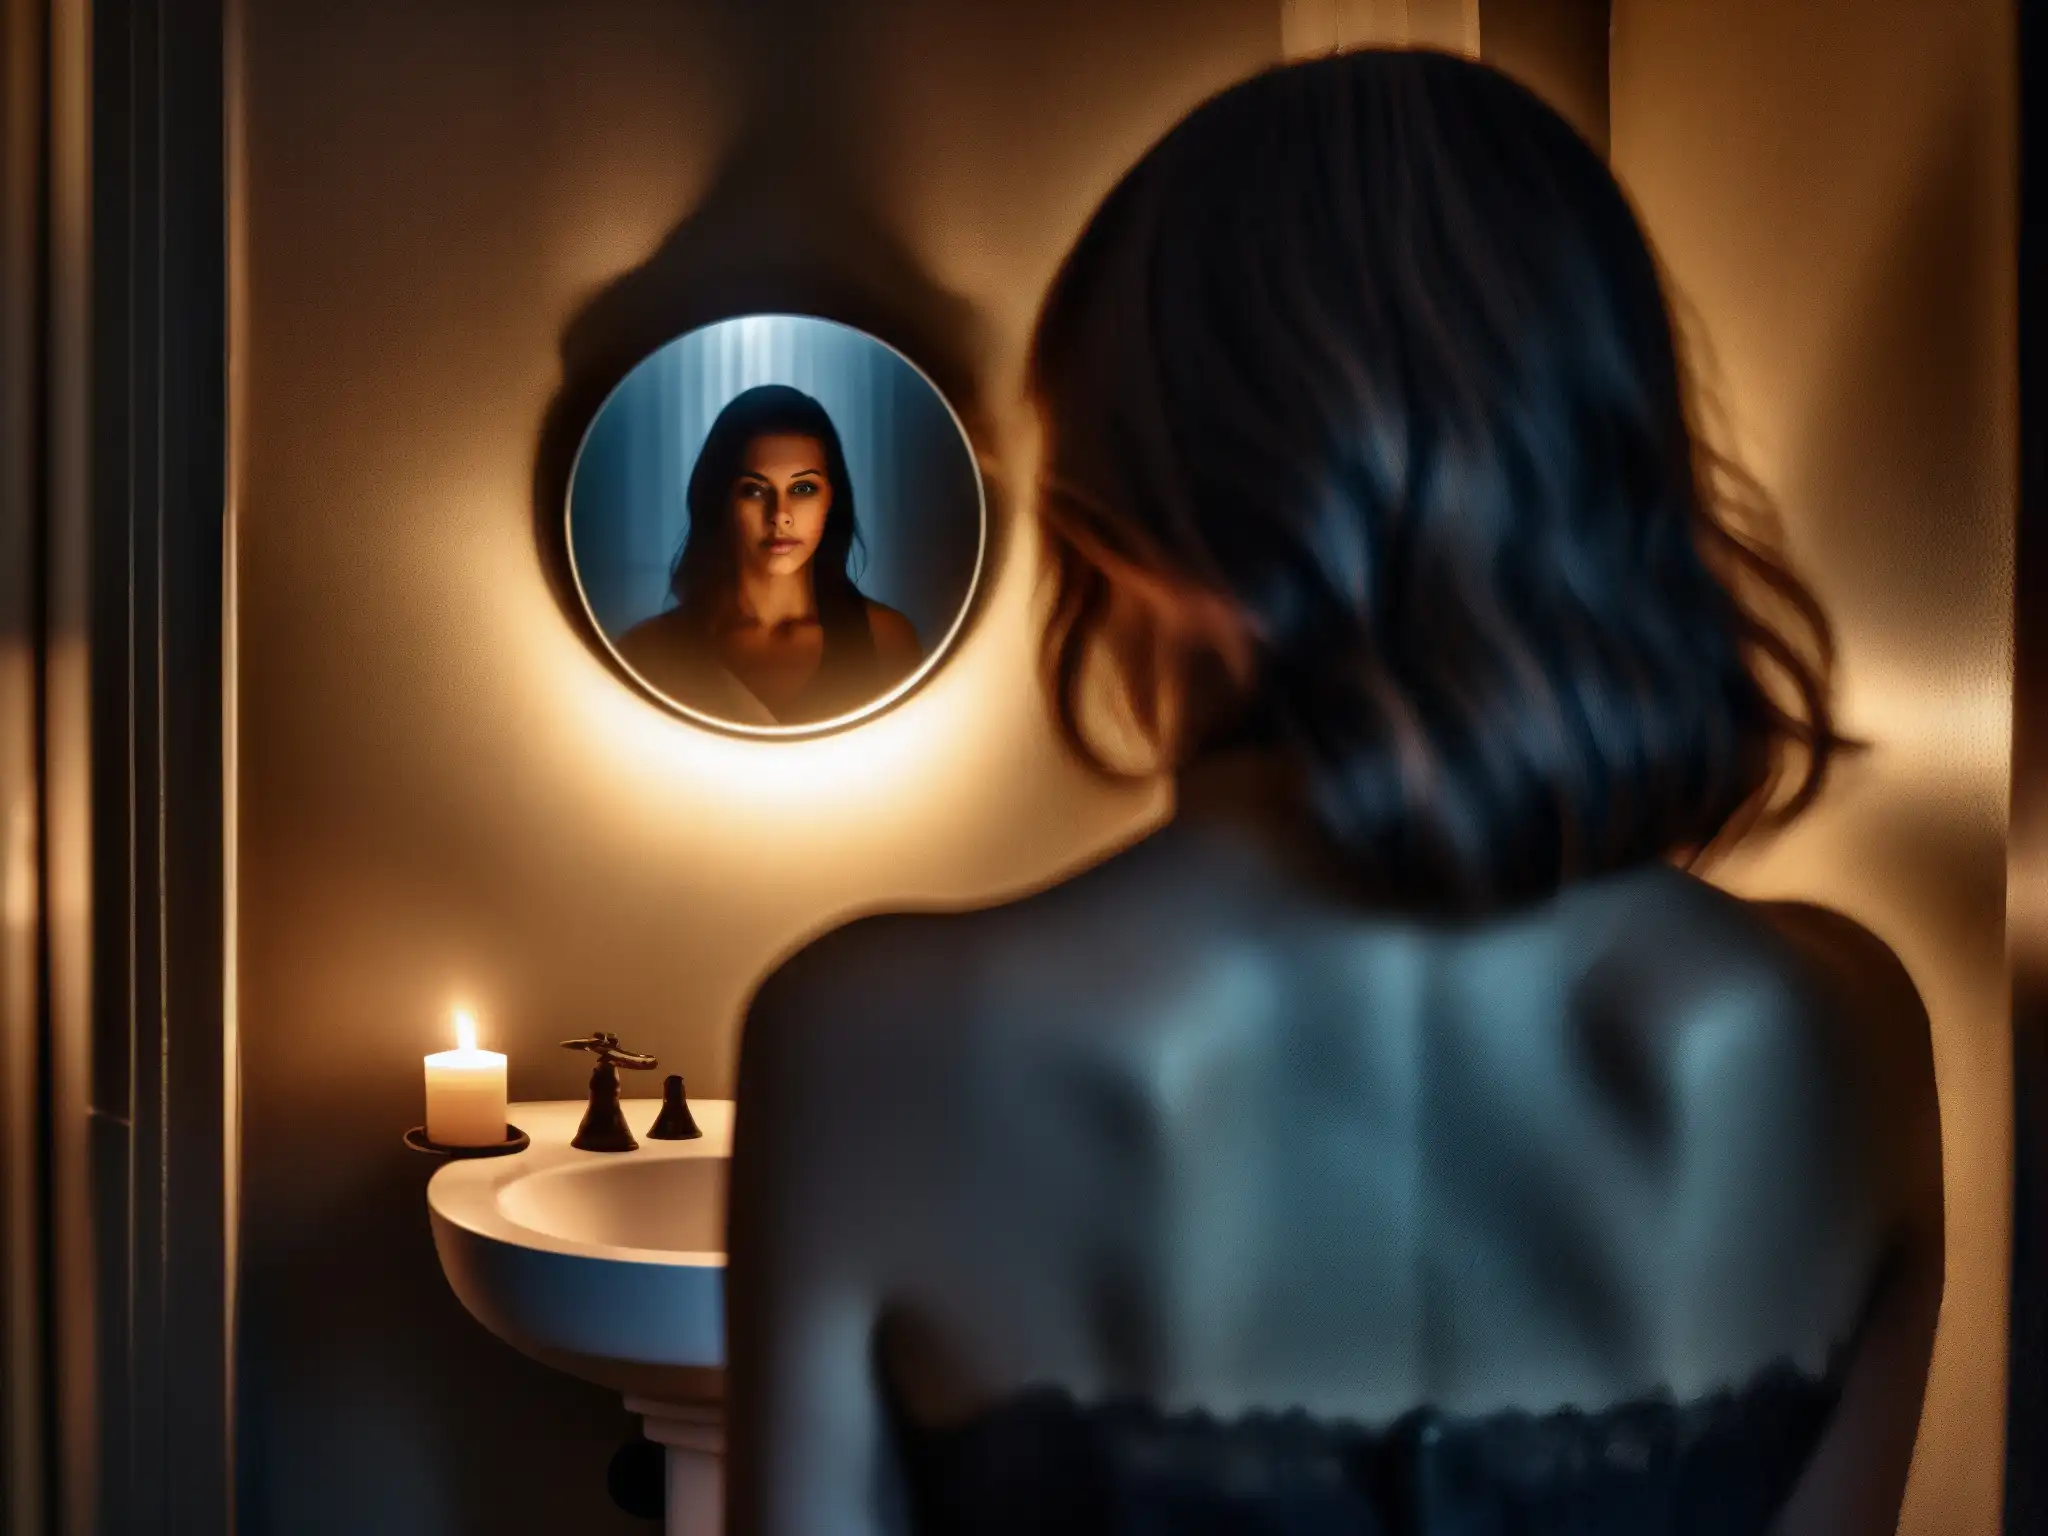 Reflejo fantasmal en espejo empañado, velas y rostro aterrado: atmósfera para análisis psicológico leyenda Bloody Mary